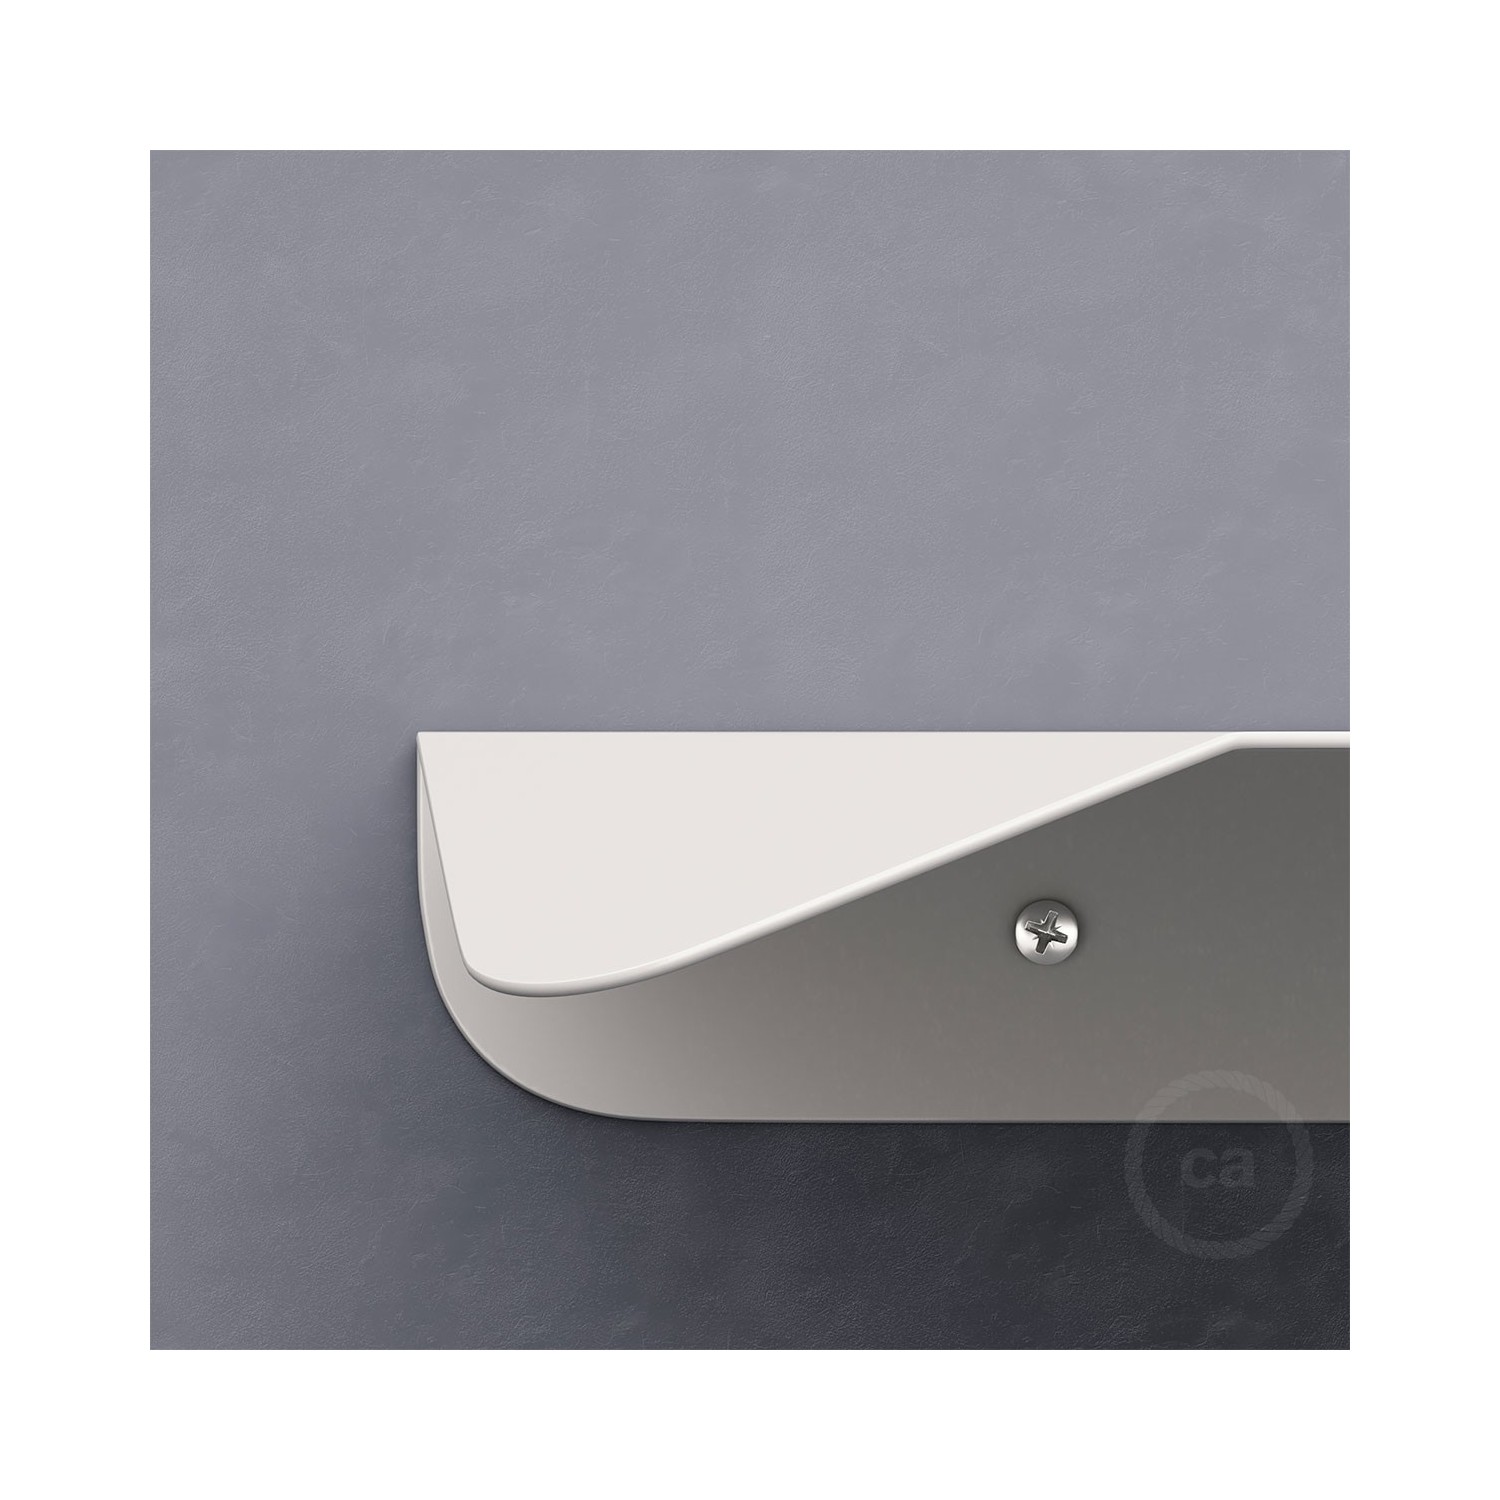 Magnetico®-Shelf, metal shelf for Magnetico®-Plug